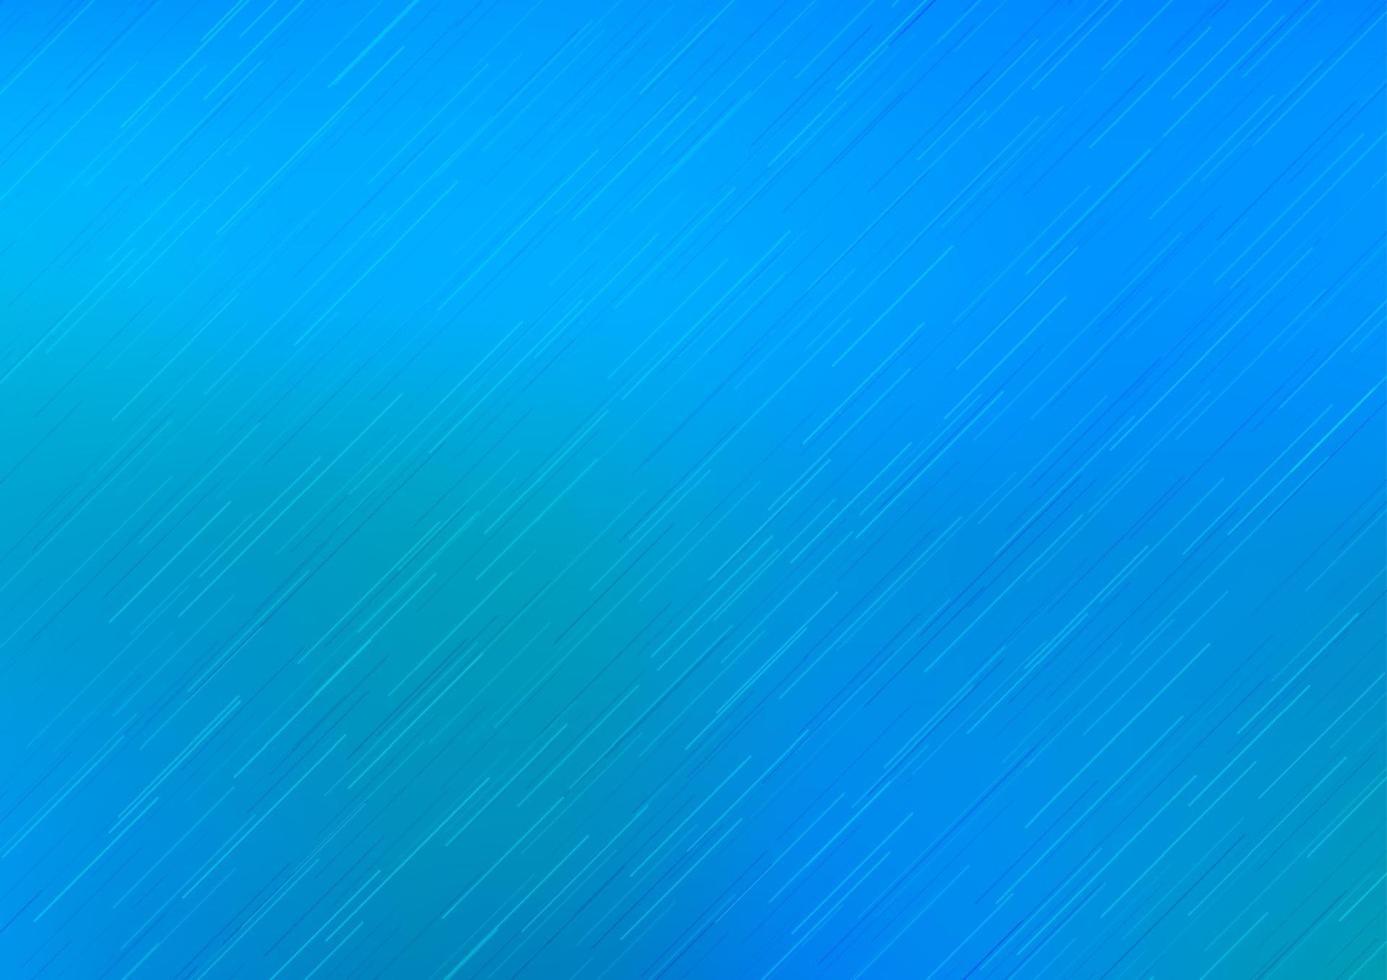 couverture de vecteur bleu clair avec de longues lignes.